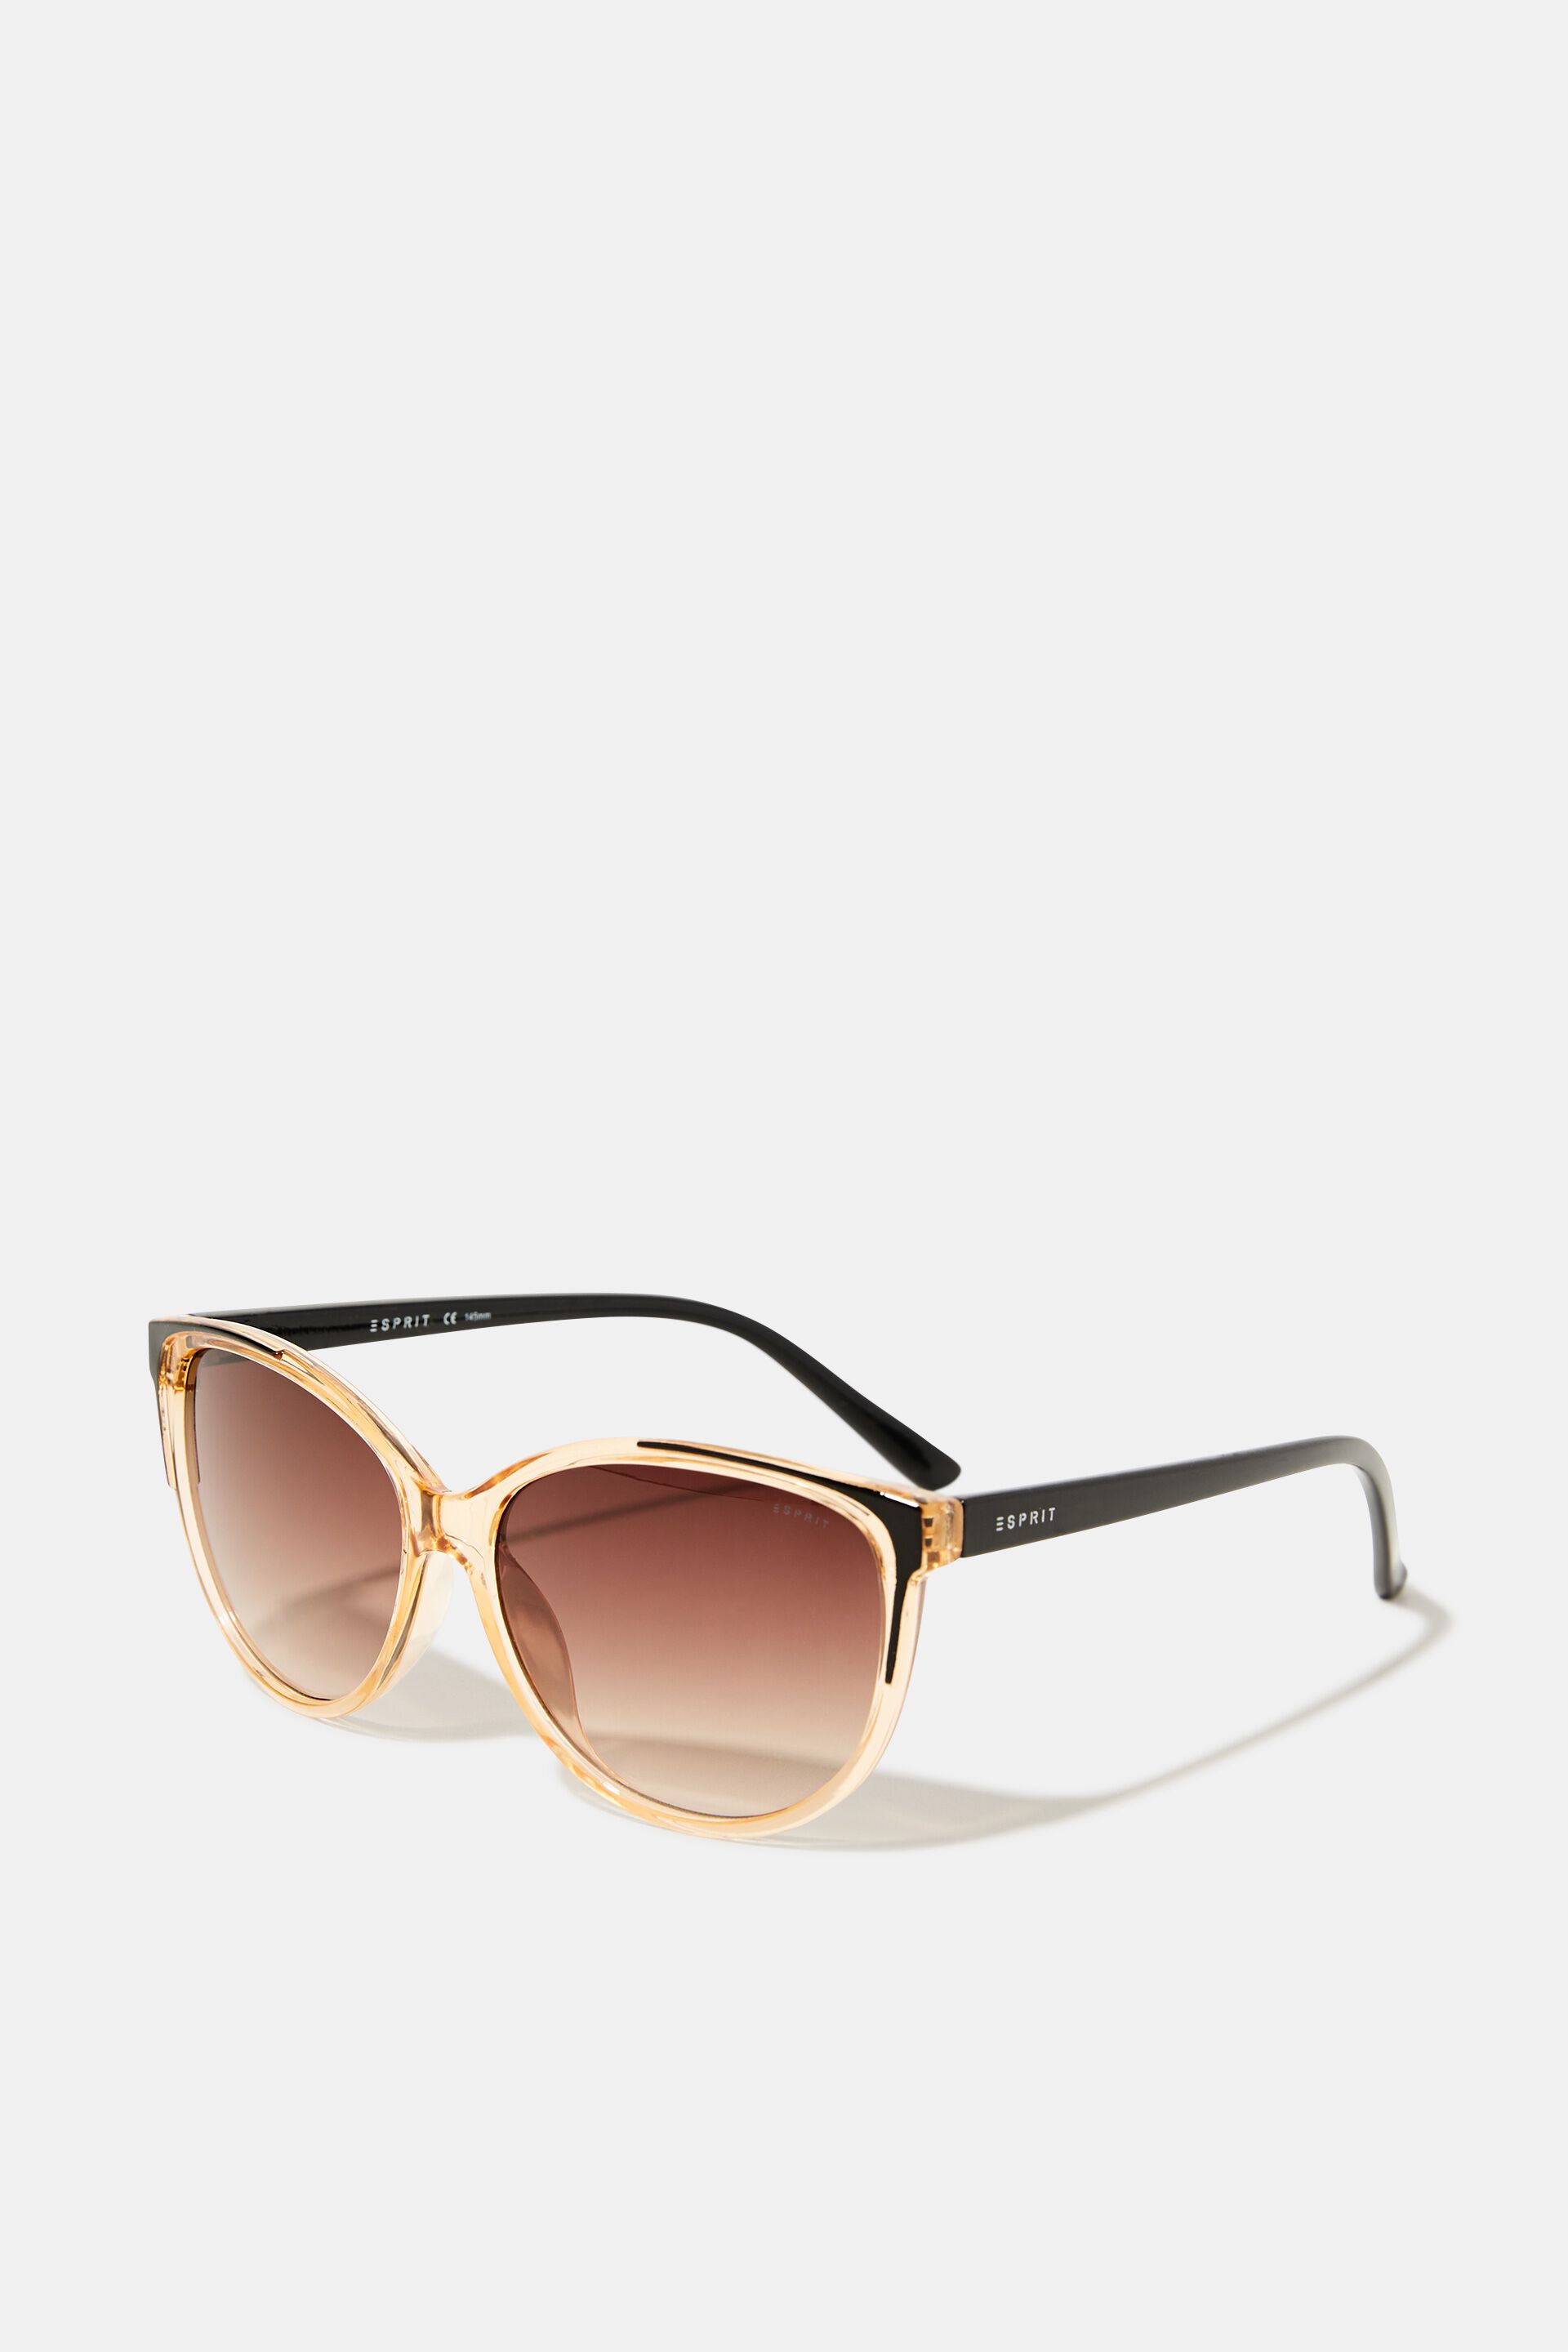 Esprit Online Store Sonnenbrille mit transparentem Rahmen